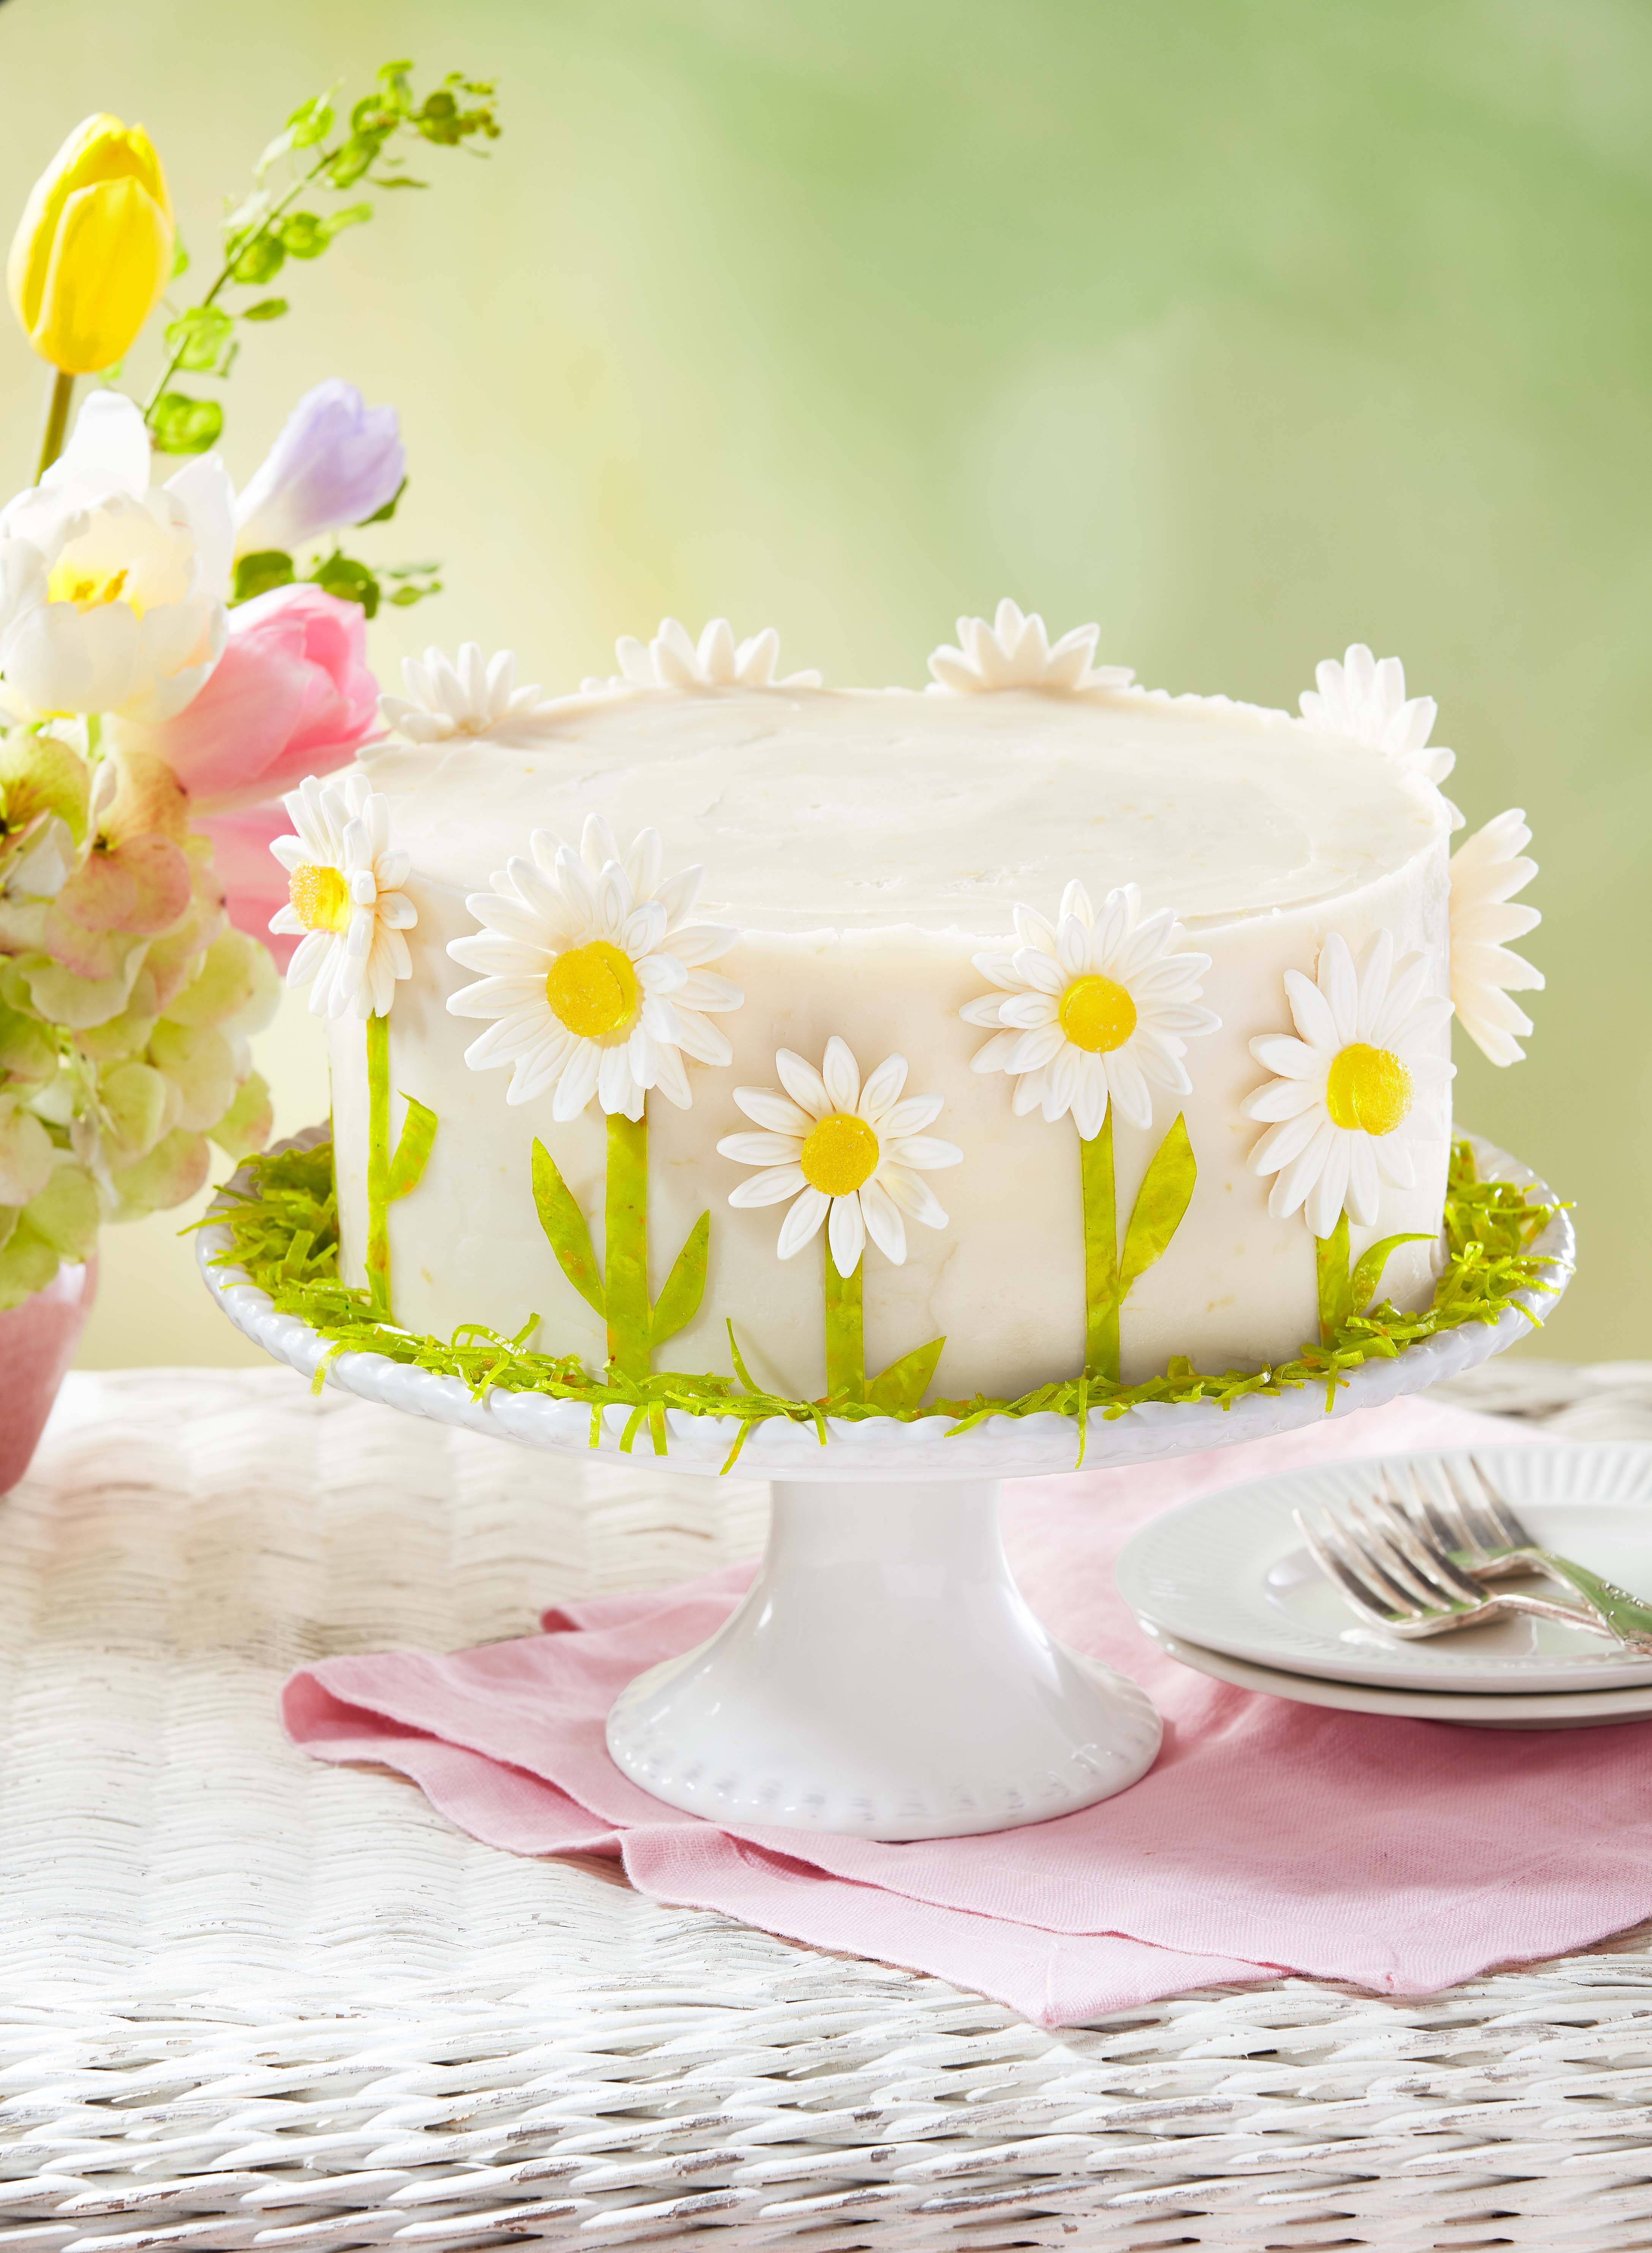 7 Best Birthday Cake Ideas for Your Mom + 3 Tasty Alternatives - Tartelette